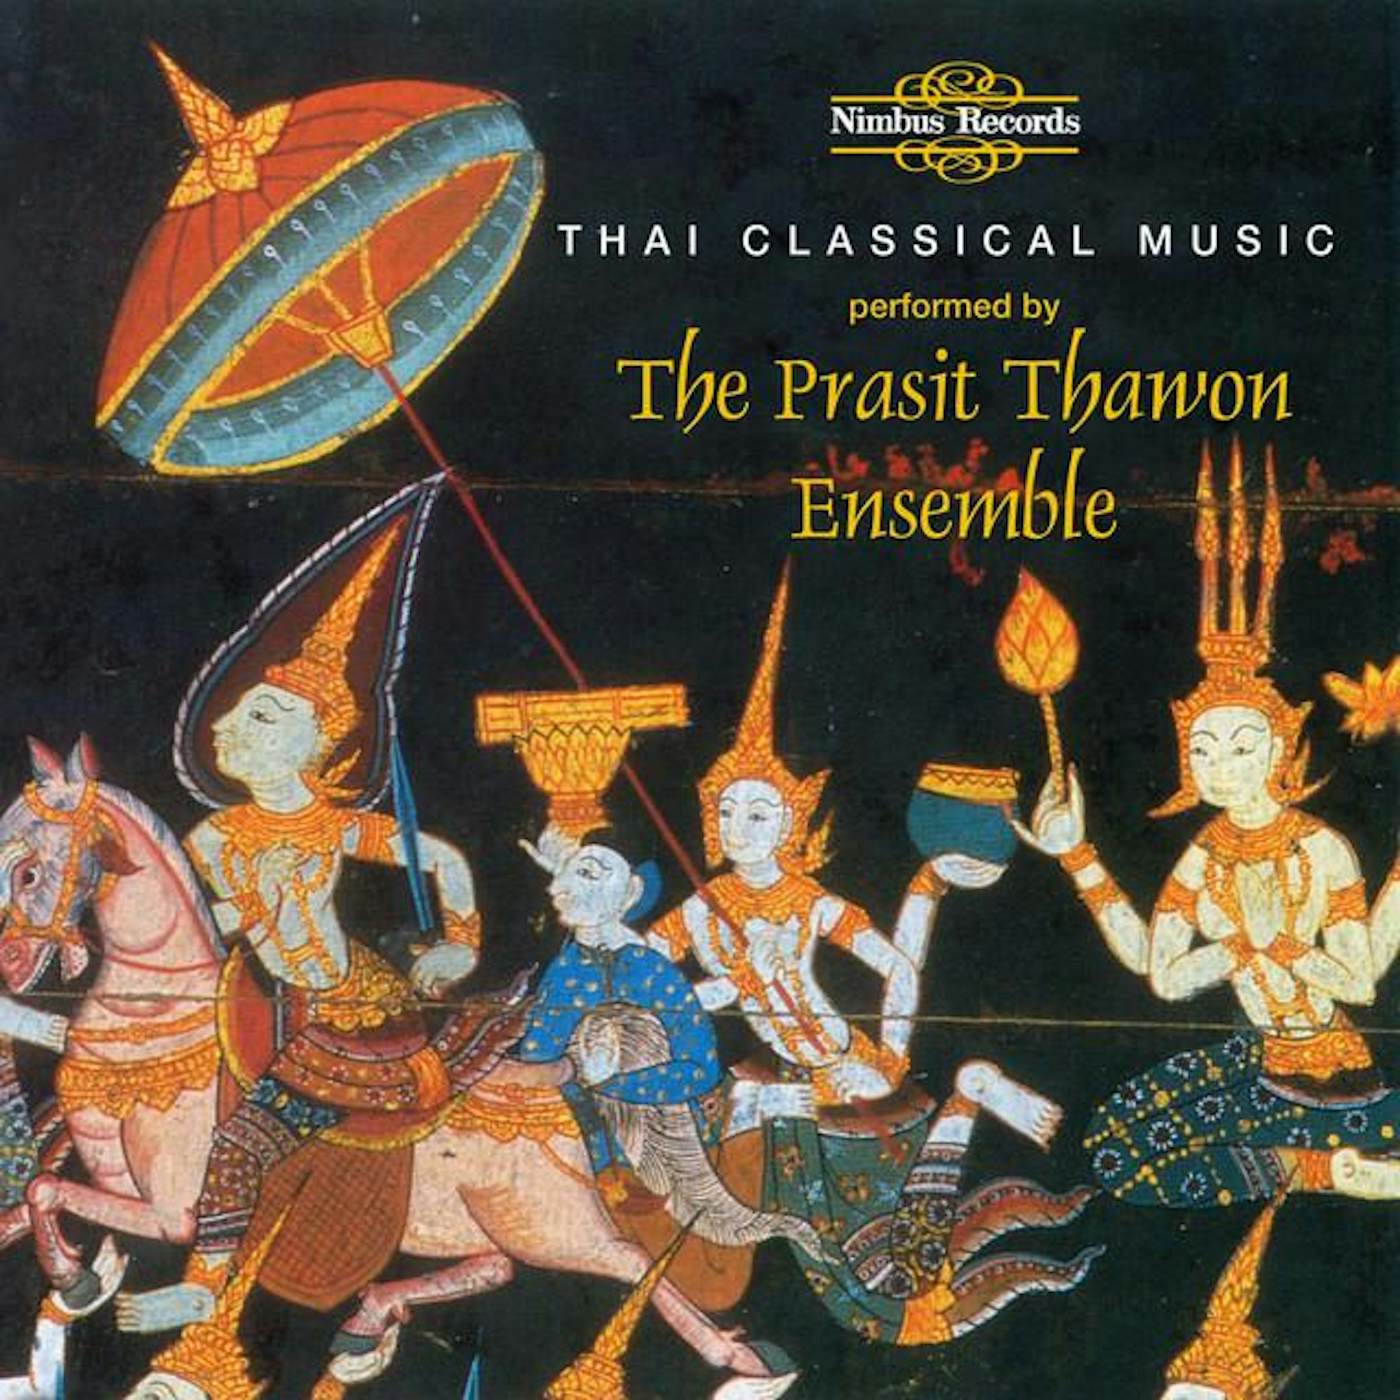 The Prasit Thawon Ensemble